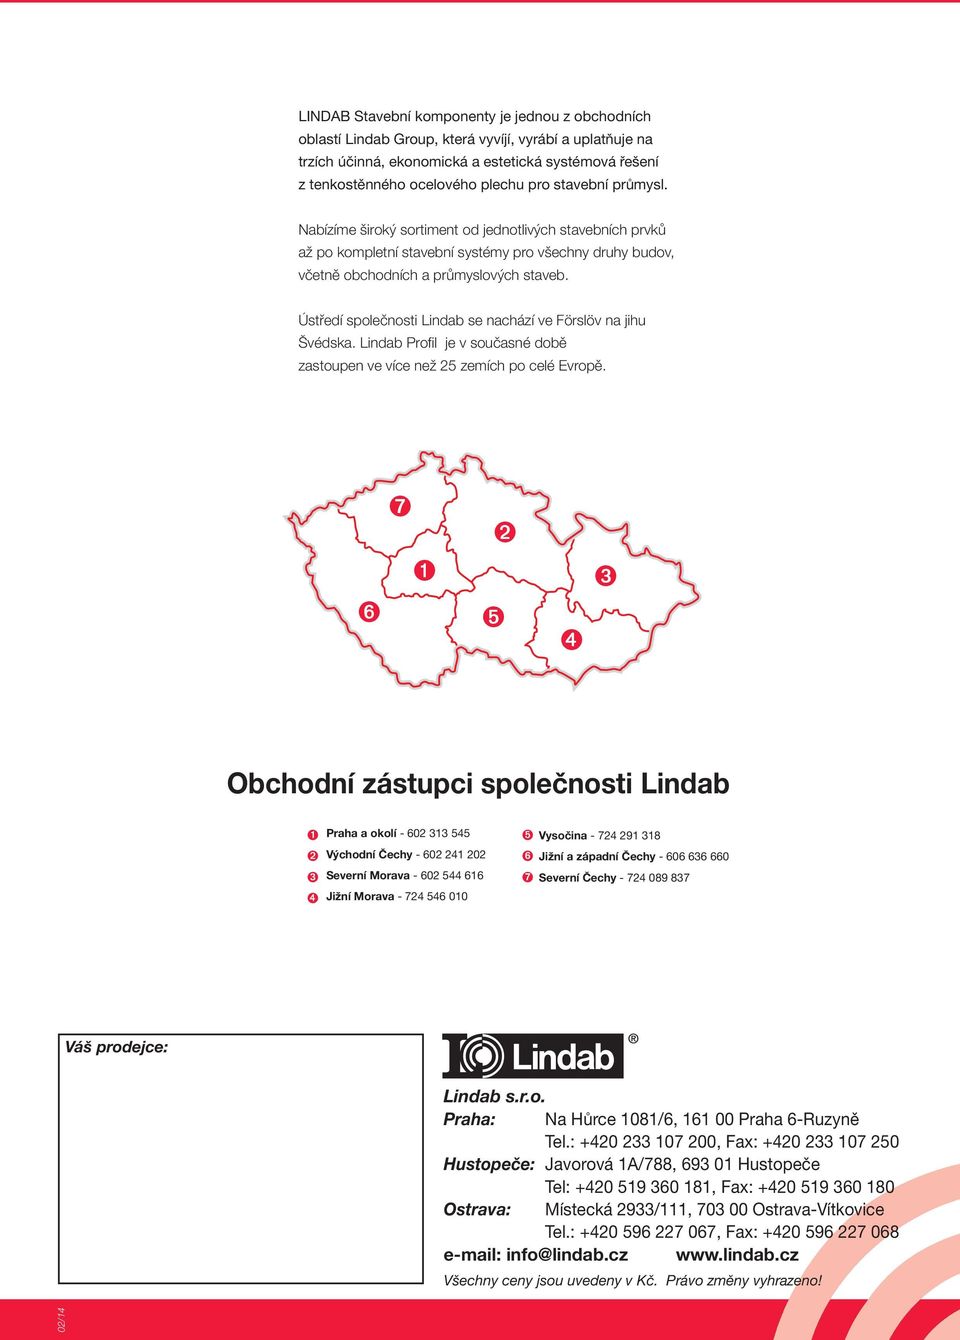 Ústředí společnosti Lindab se nachází ve Förslöv na jihu Švédska. Lindab Profil je v současné době zastoupen ve více než 25 zemích po celé Evropě.